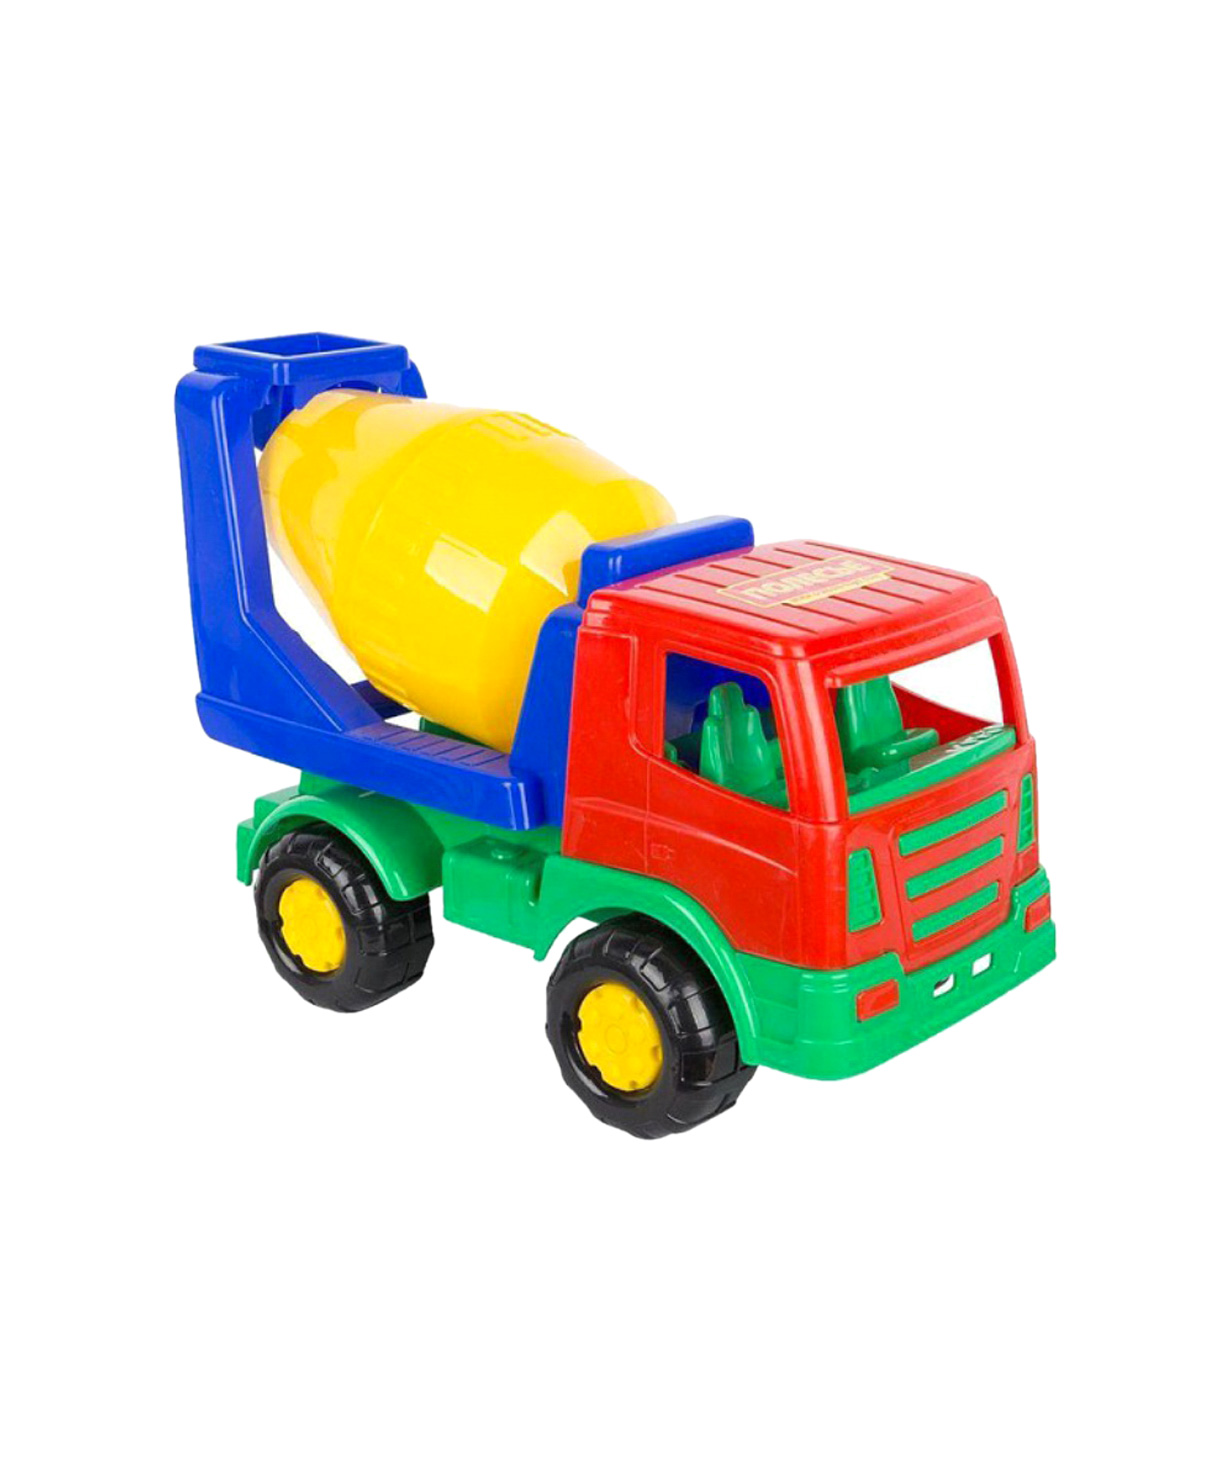 Խաղալիք «Mankan» Polesie բեռնատար մեքենա